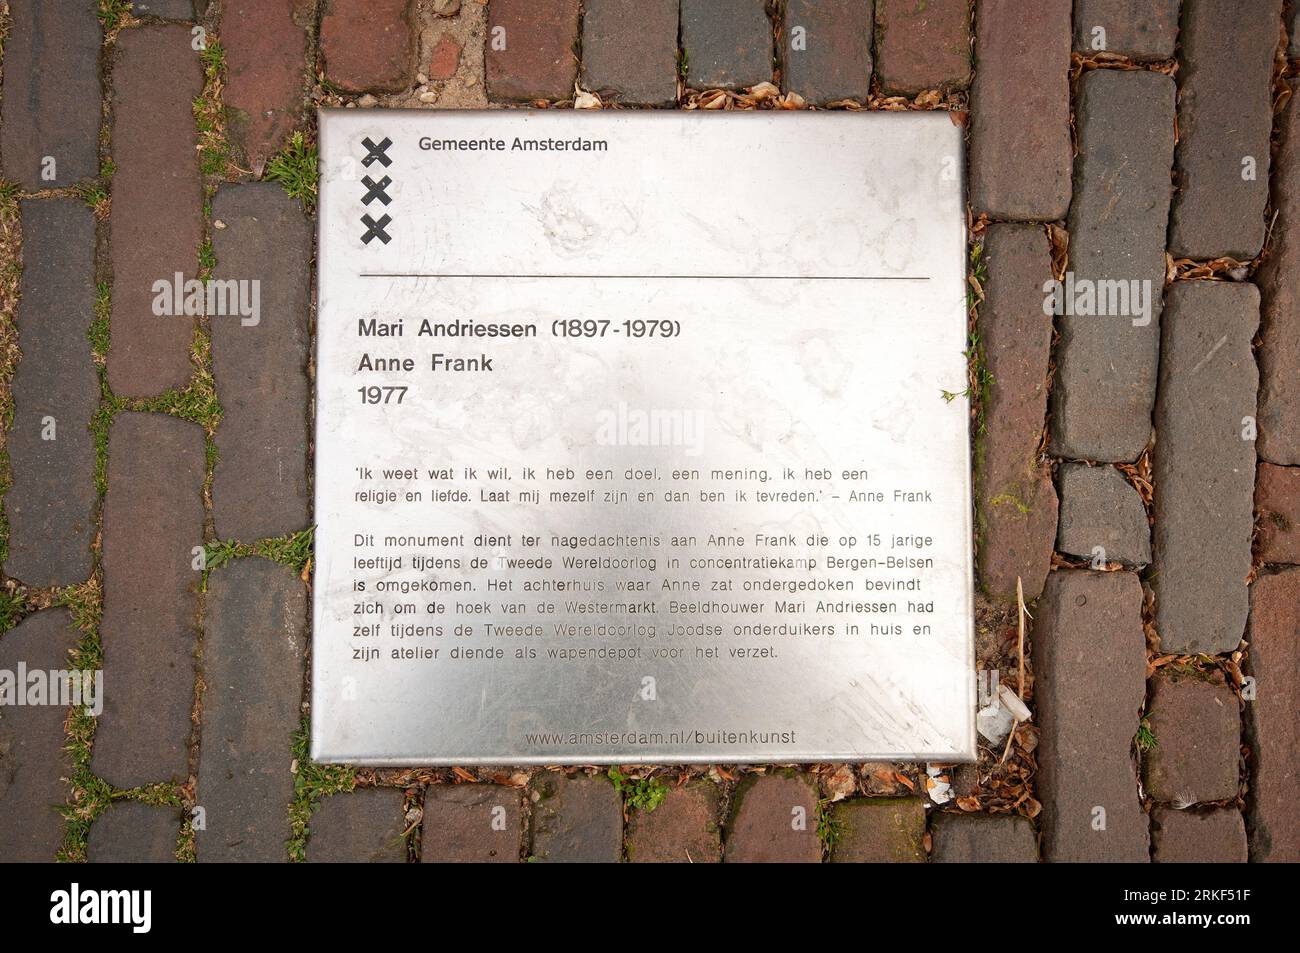 Plaque métallique au sol à côté de la statue d'Anne Frank (réalisée en 1977 par le sculpteur néerlandais mari Andriessen, 1897-1979), Amsterdam, pays-Bas Banque D'Images